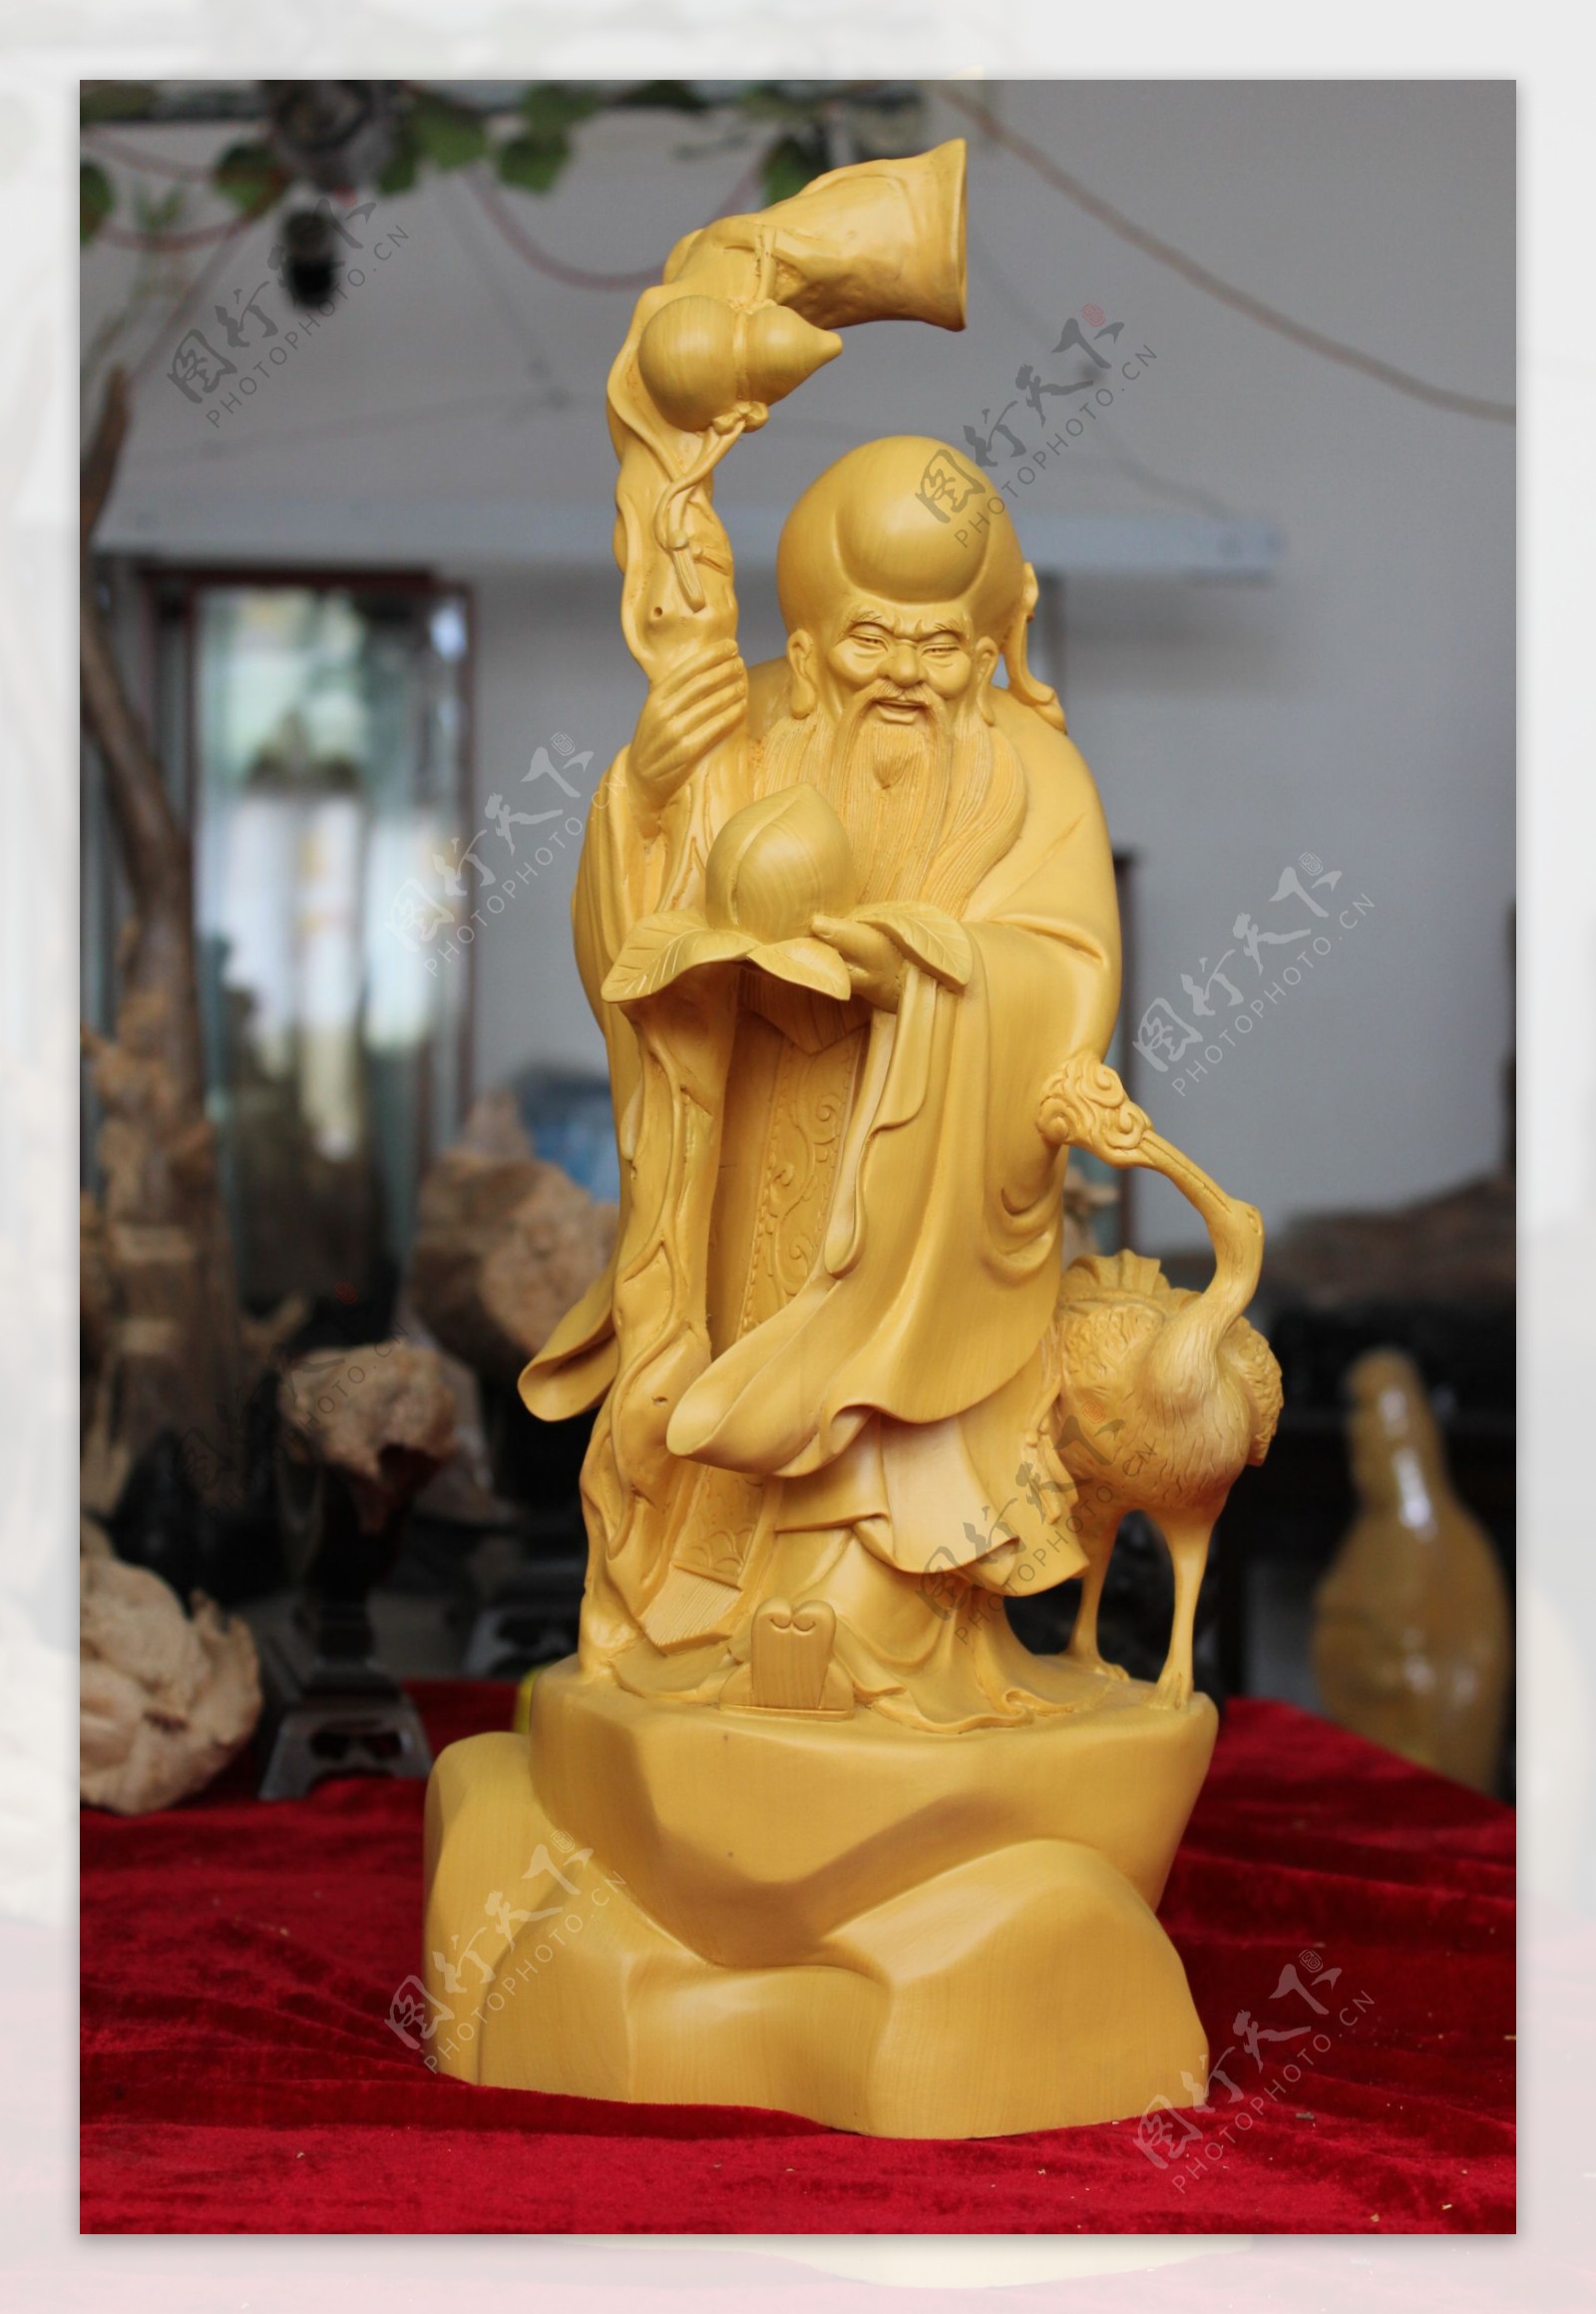 香榧木雕刻寿星图片